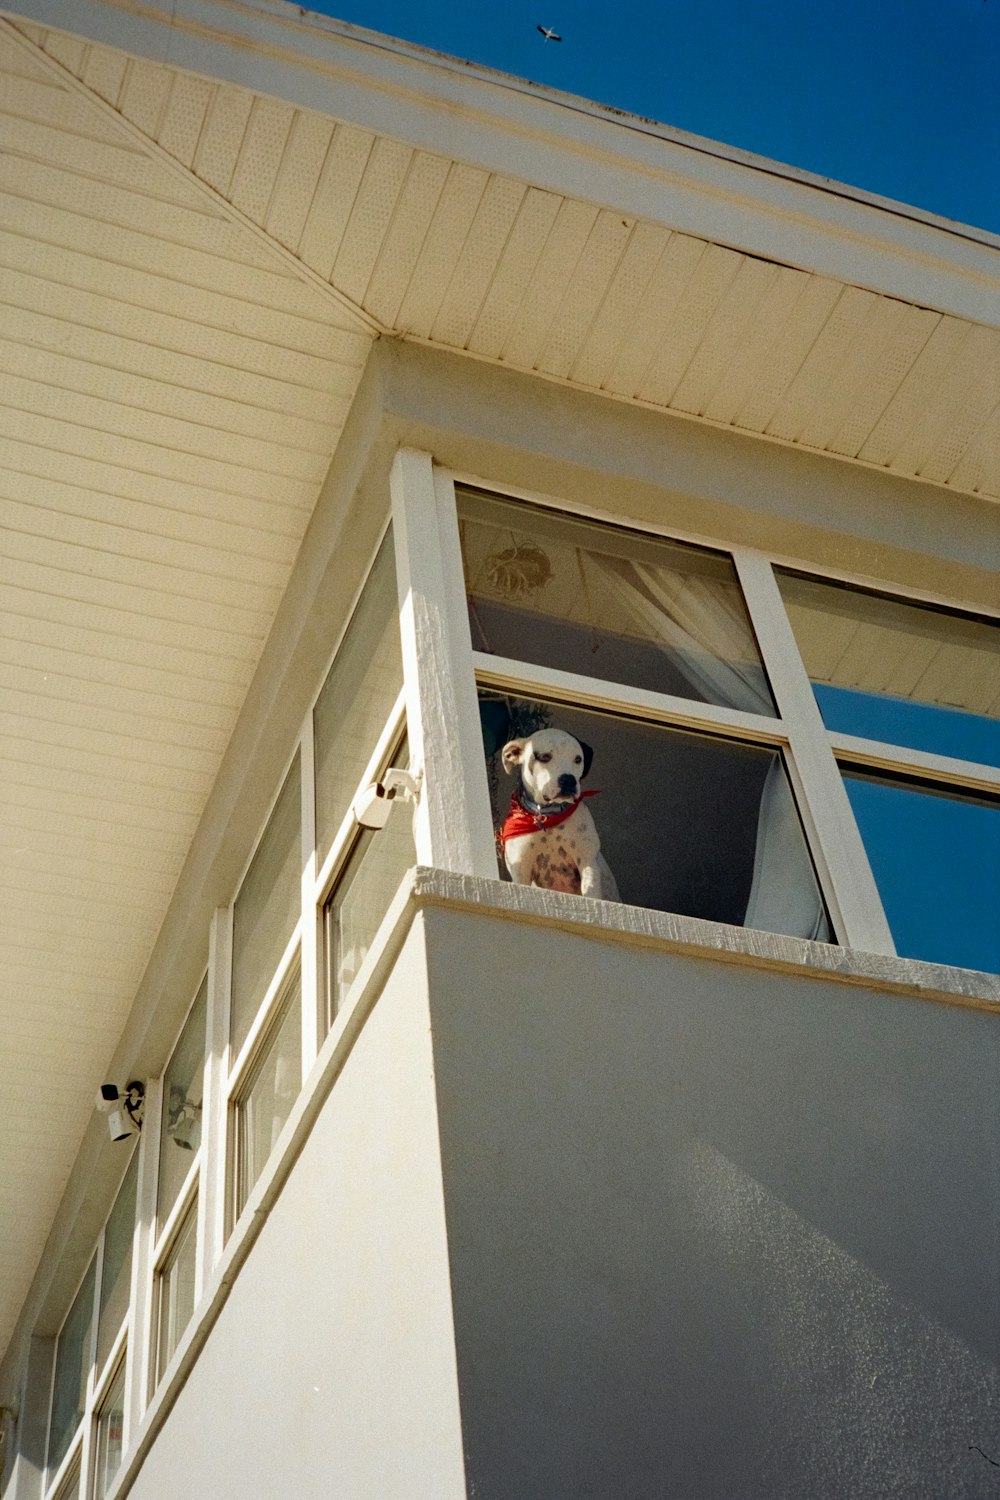 white and black short coated dog on window